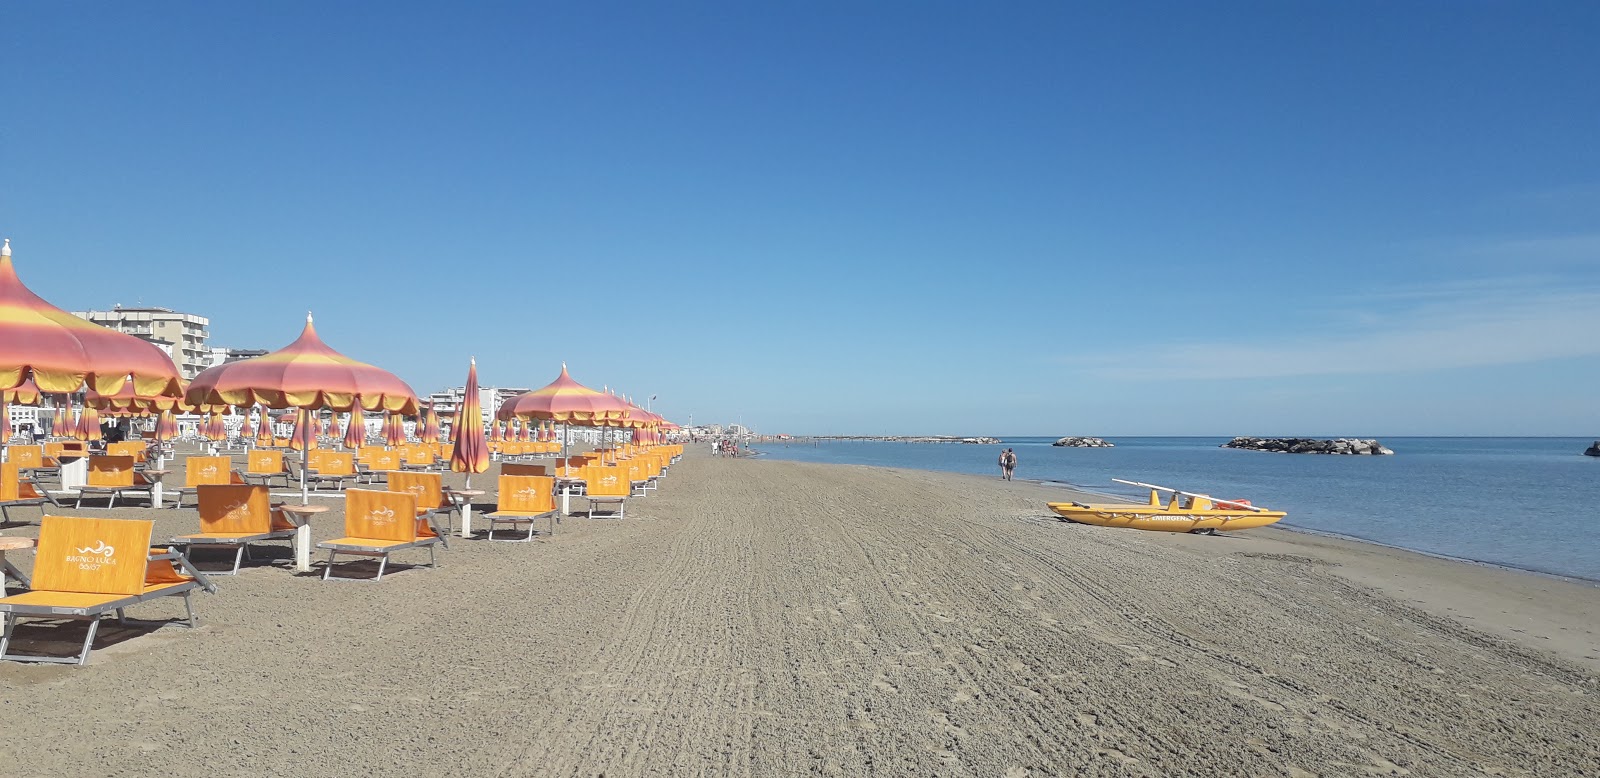 Foto von Torre pedrera beach mit heller feiner sand Oberfläche